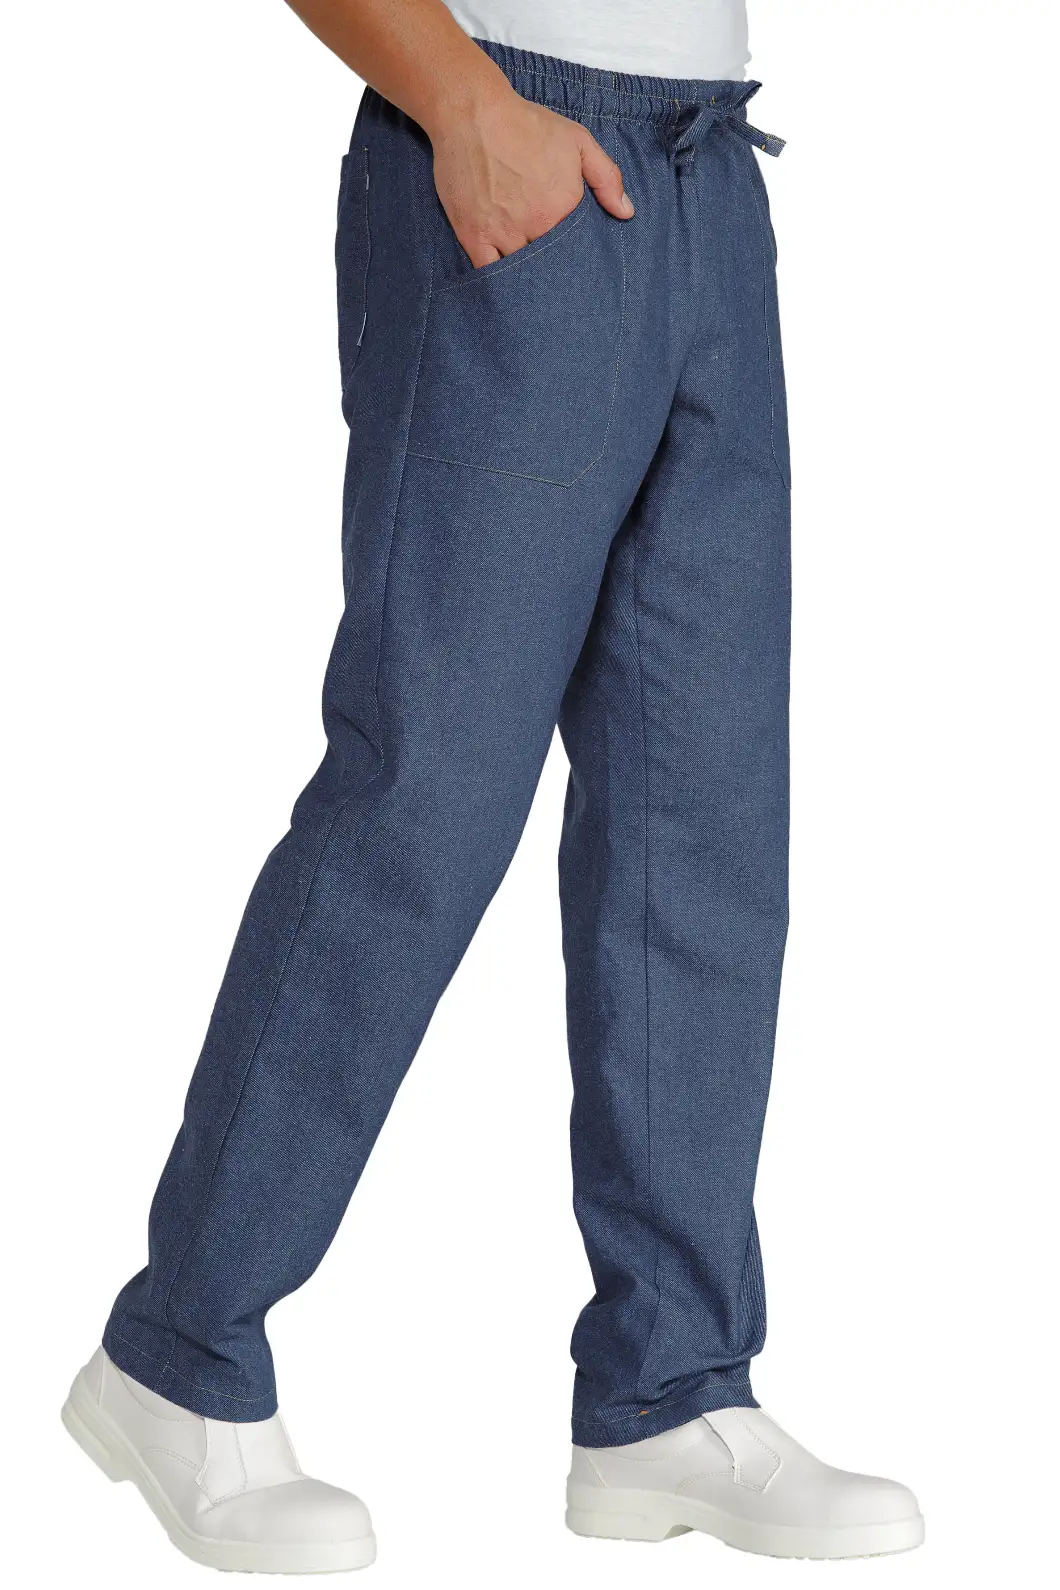 Pantalone per Ristorazione, Estetica, Sanitario Personalizzato in Jeans - Isacco